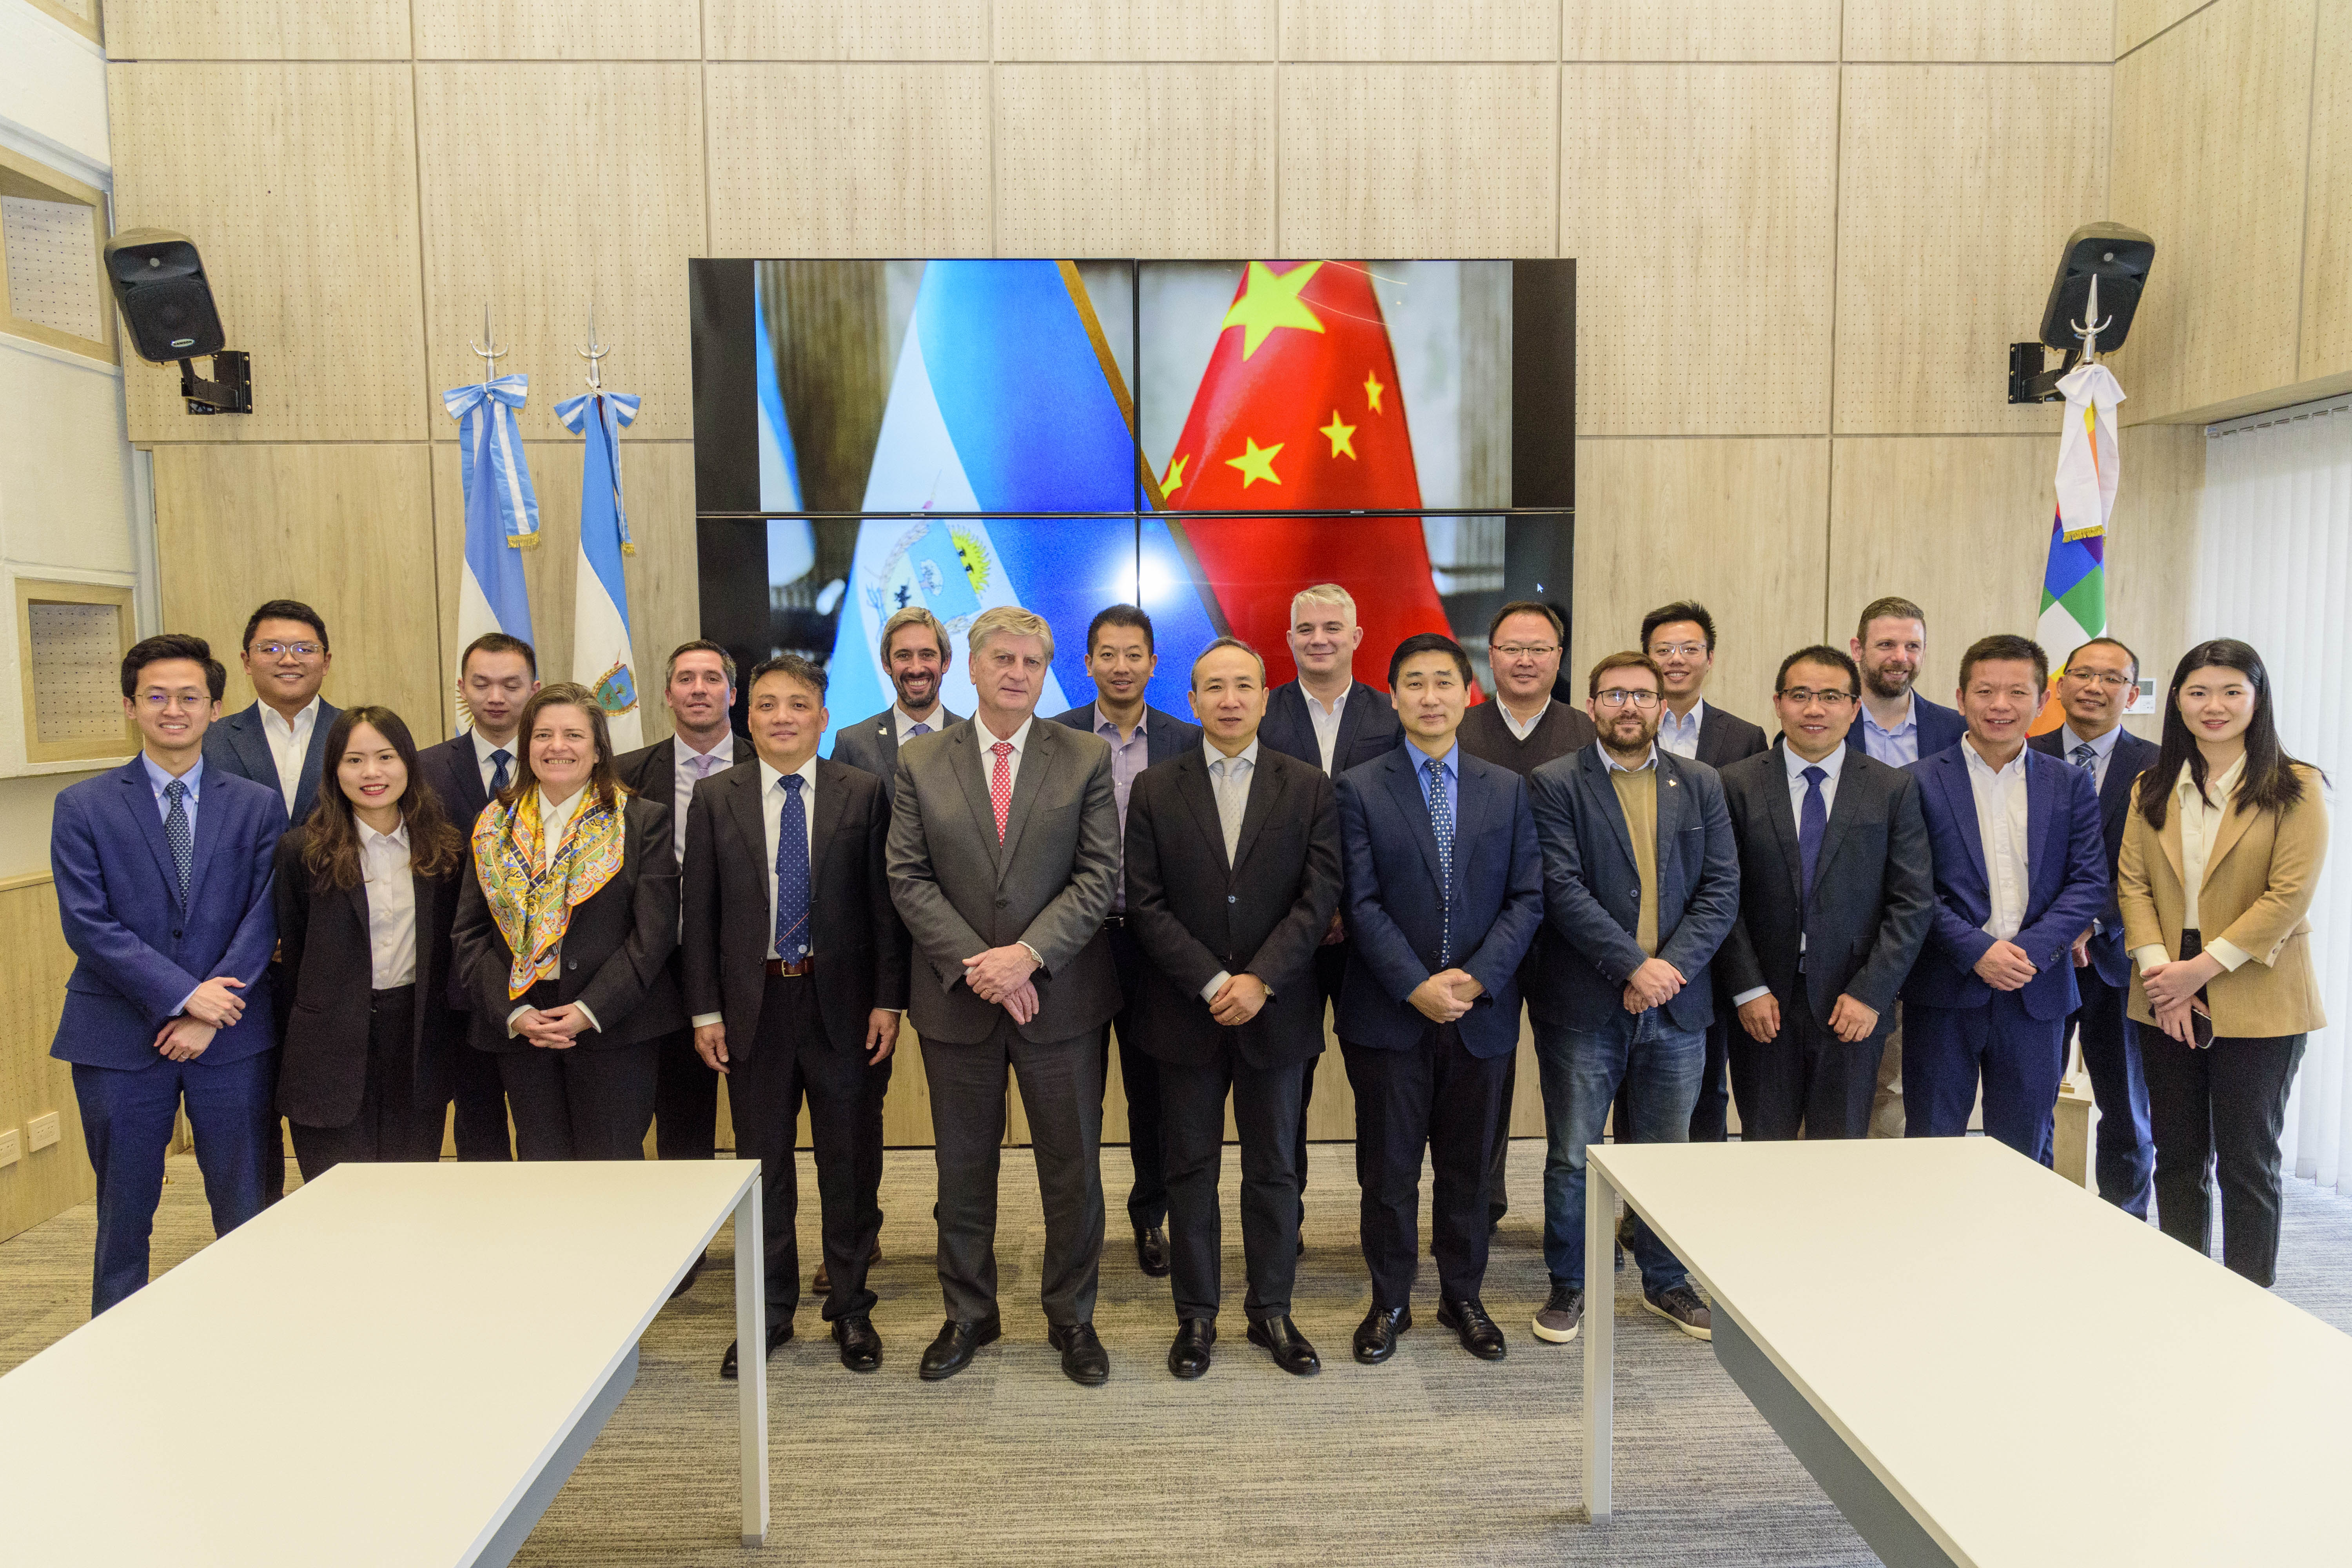 La Pampa forja vínculos comerciales con China para atraer inversiones y ampliar mercados